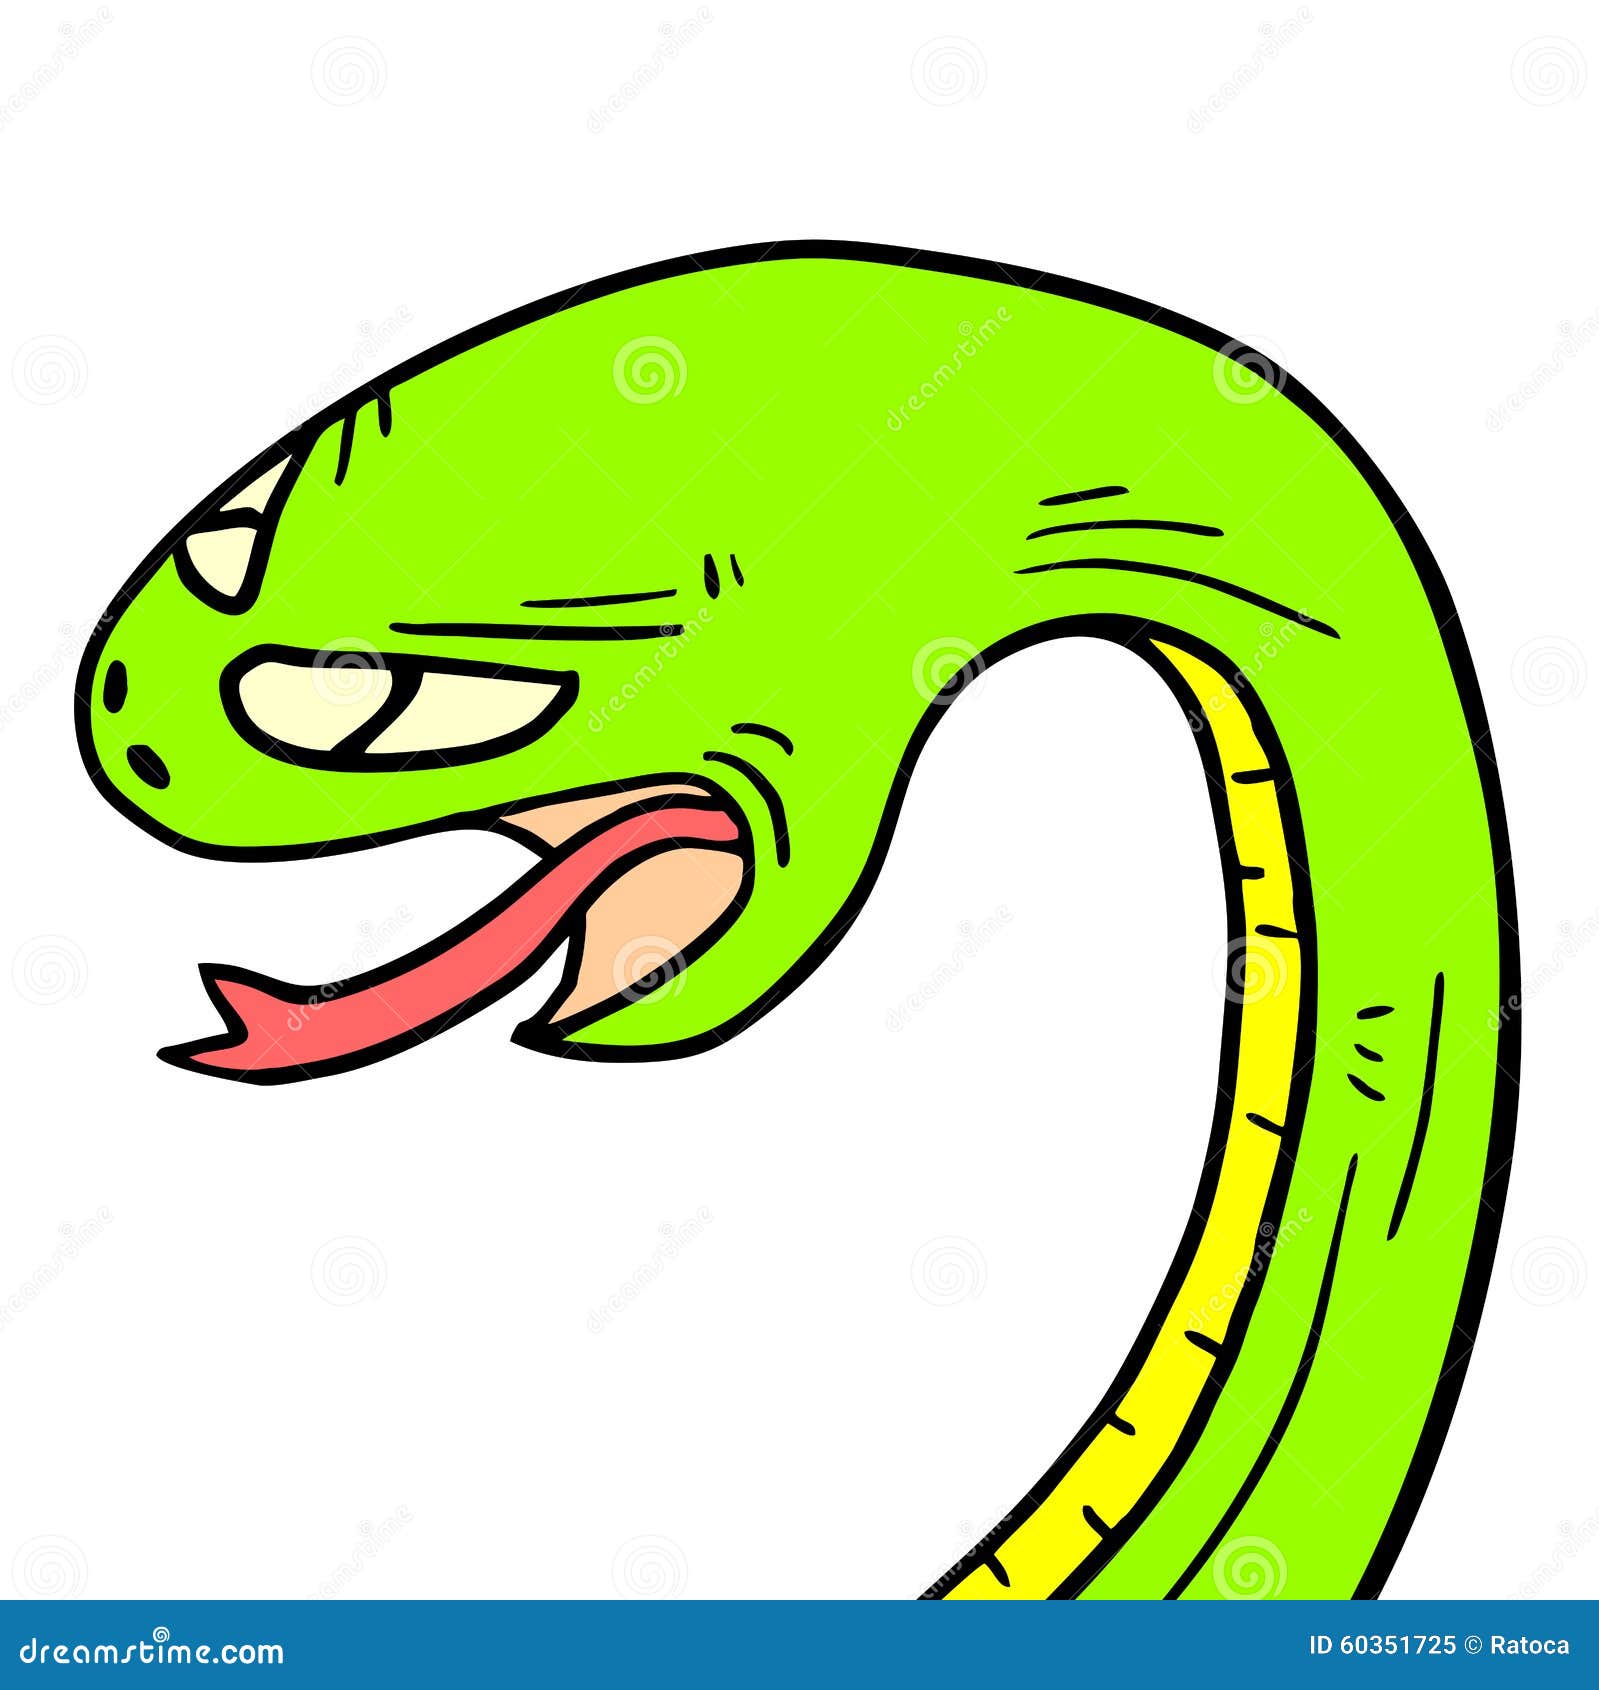 serpiente cartoon